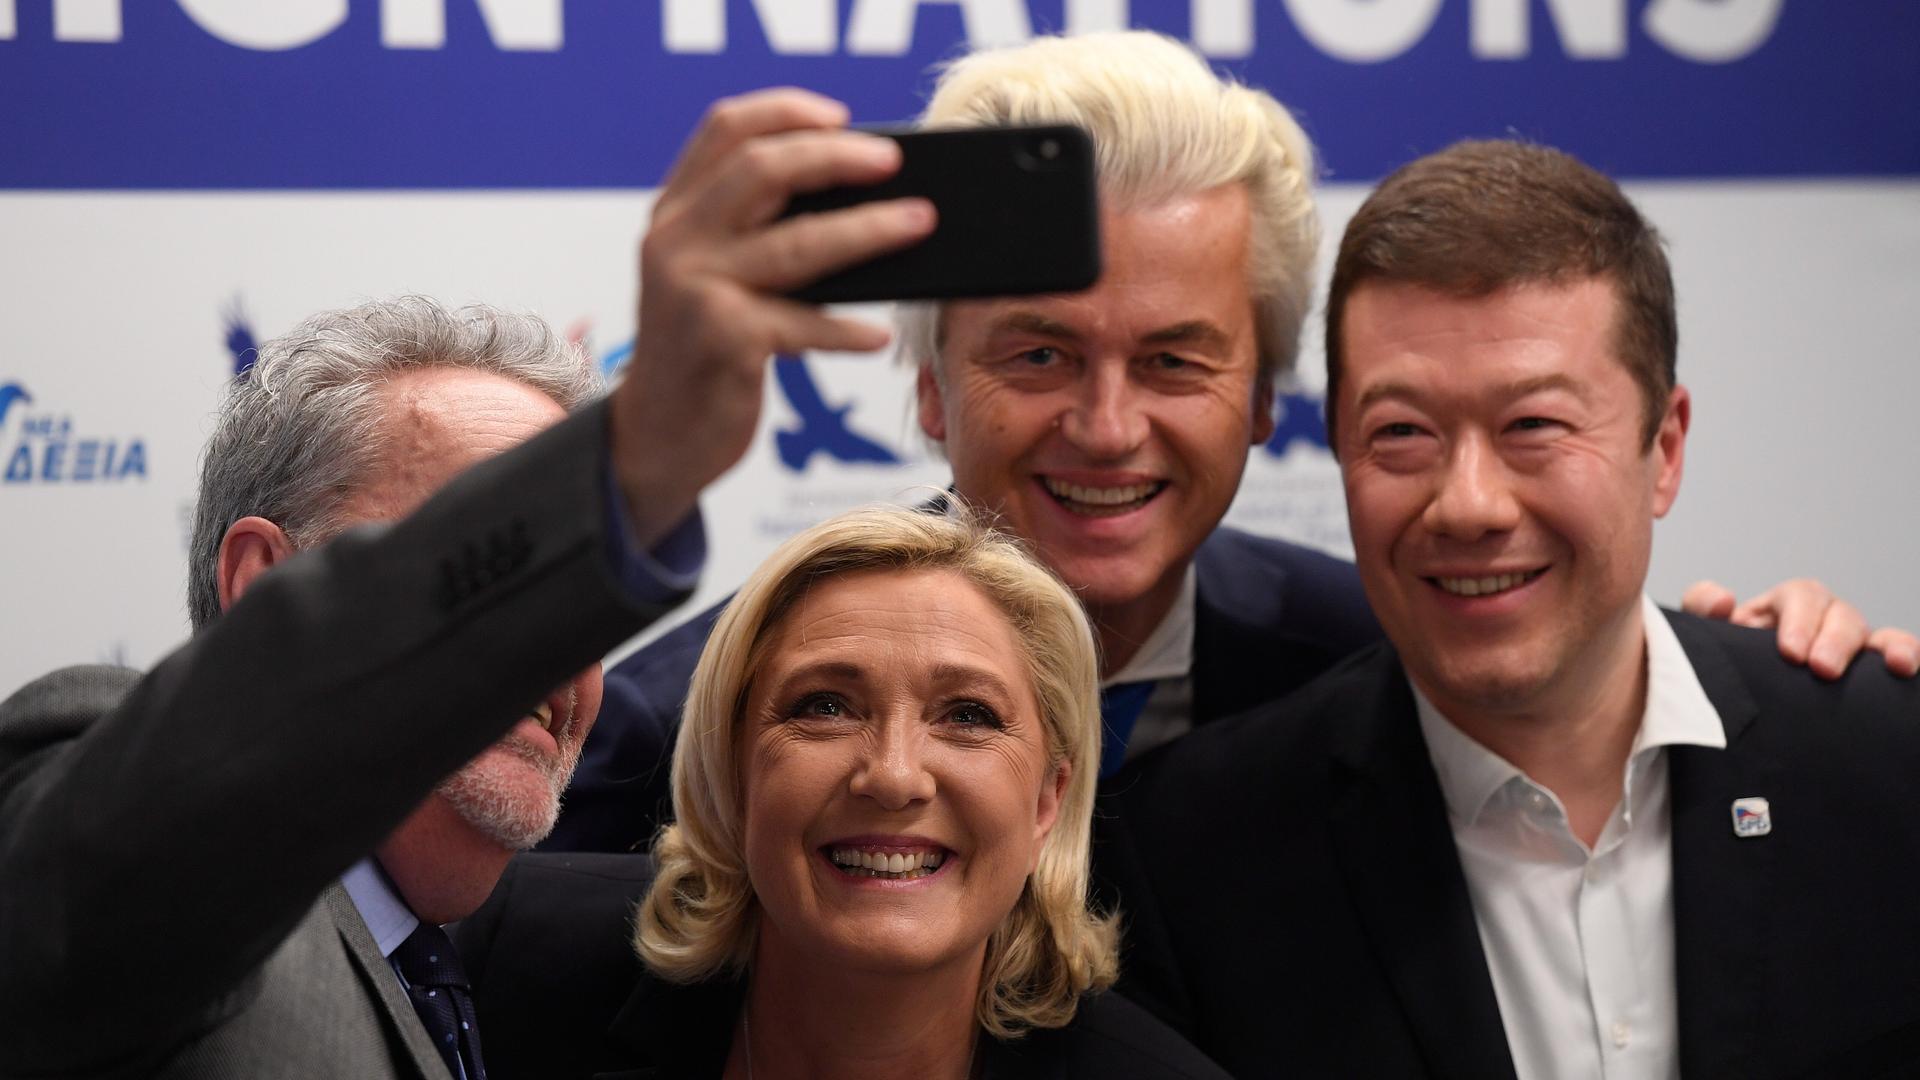 Gerolf Annemans, Vorsitzender der Fraktion Europa der Nationen und der Freiheit (ENF), links, die Vorsitzende des französischen Front National, Marine Le Pen, der tschechische Vorsitzende der rechtsextremen Partei für Freiheit und direkte Demokratie (SPD), Tomio Okamura, rechts, und der Vorsitzende der niederländischen Partei für die Freiheit, Geert Wilders, posieren für ein Selfie während einer Pressekonferenz 2019. 